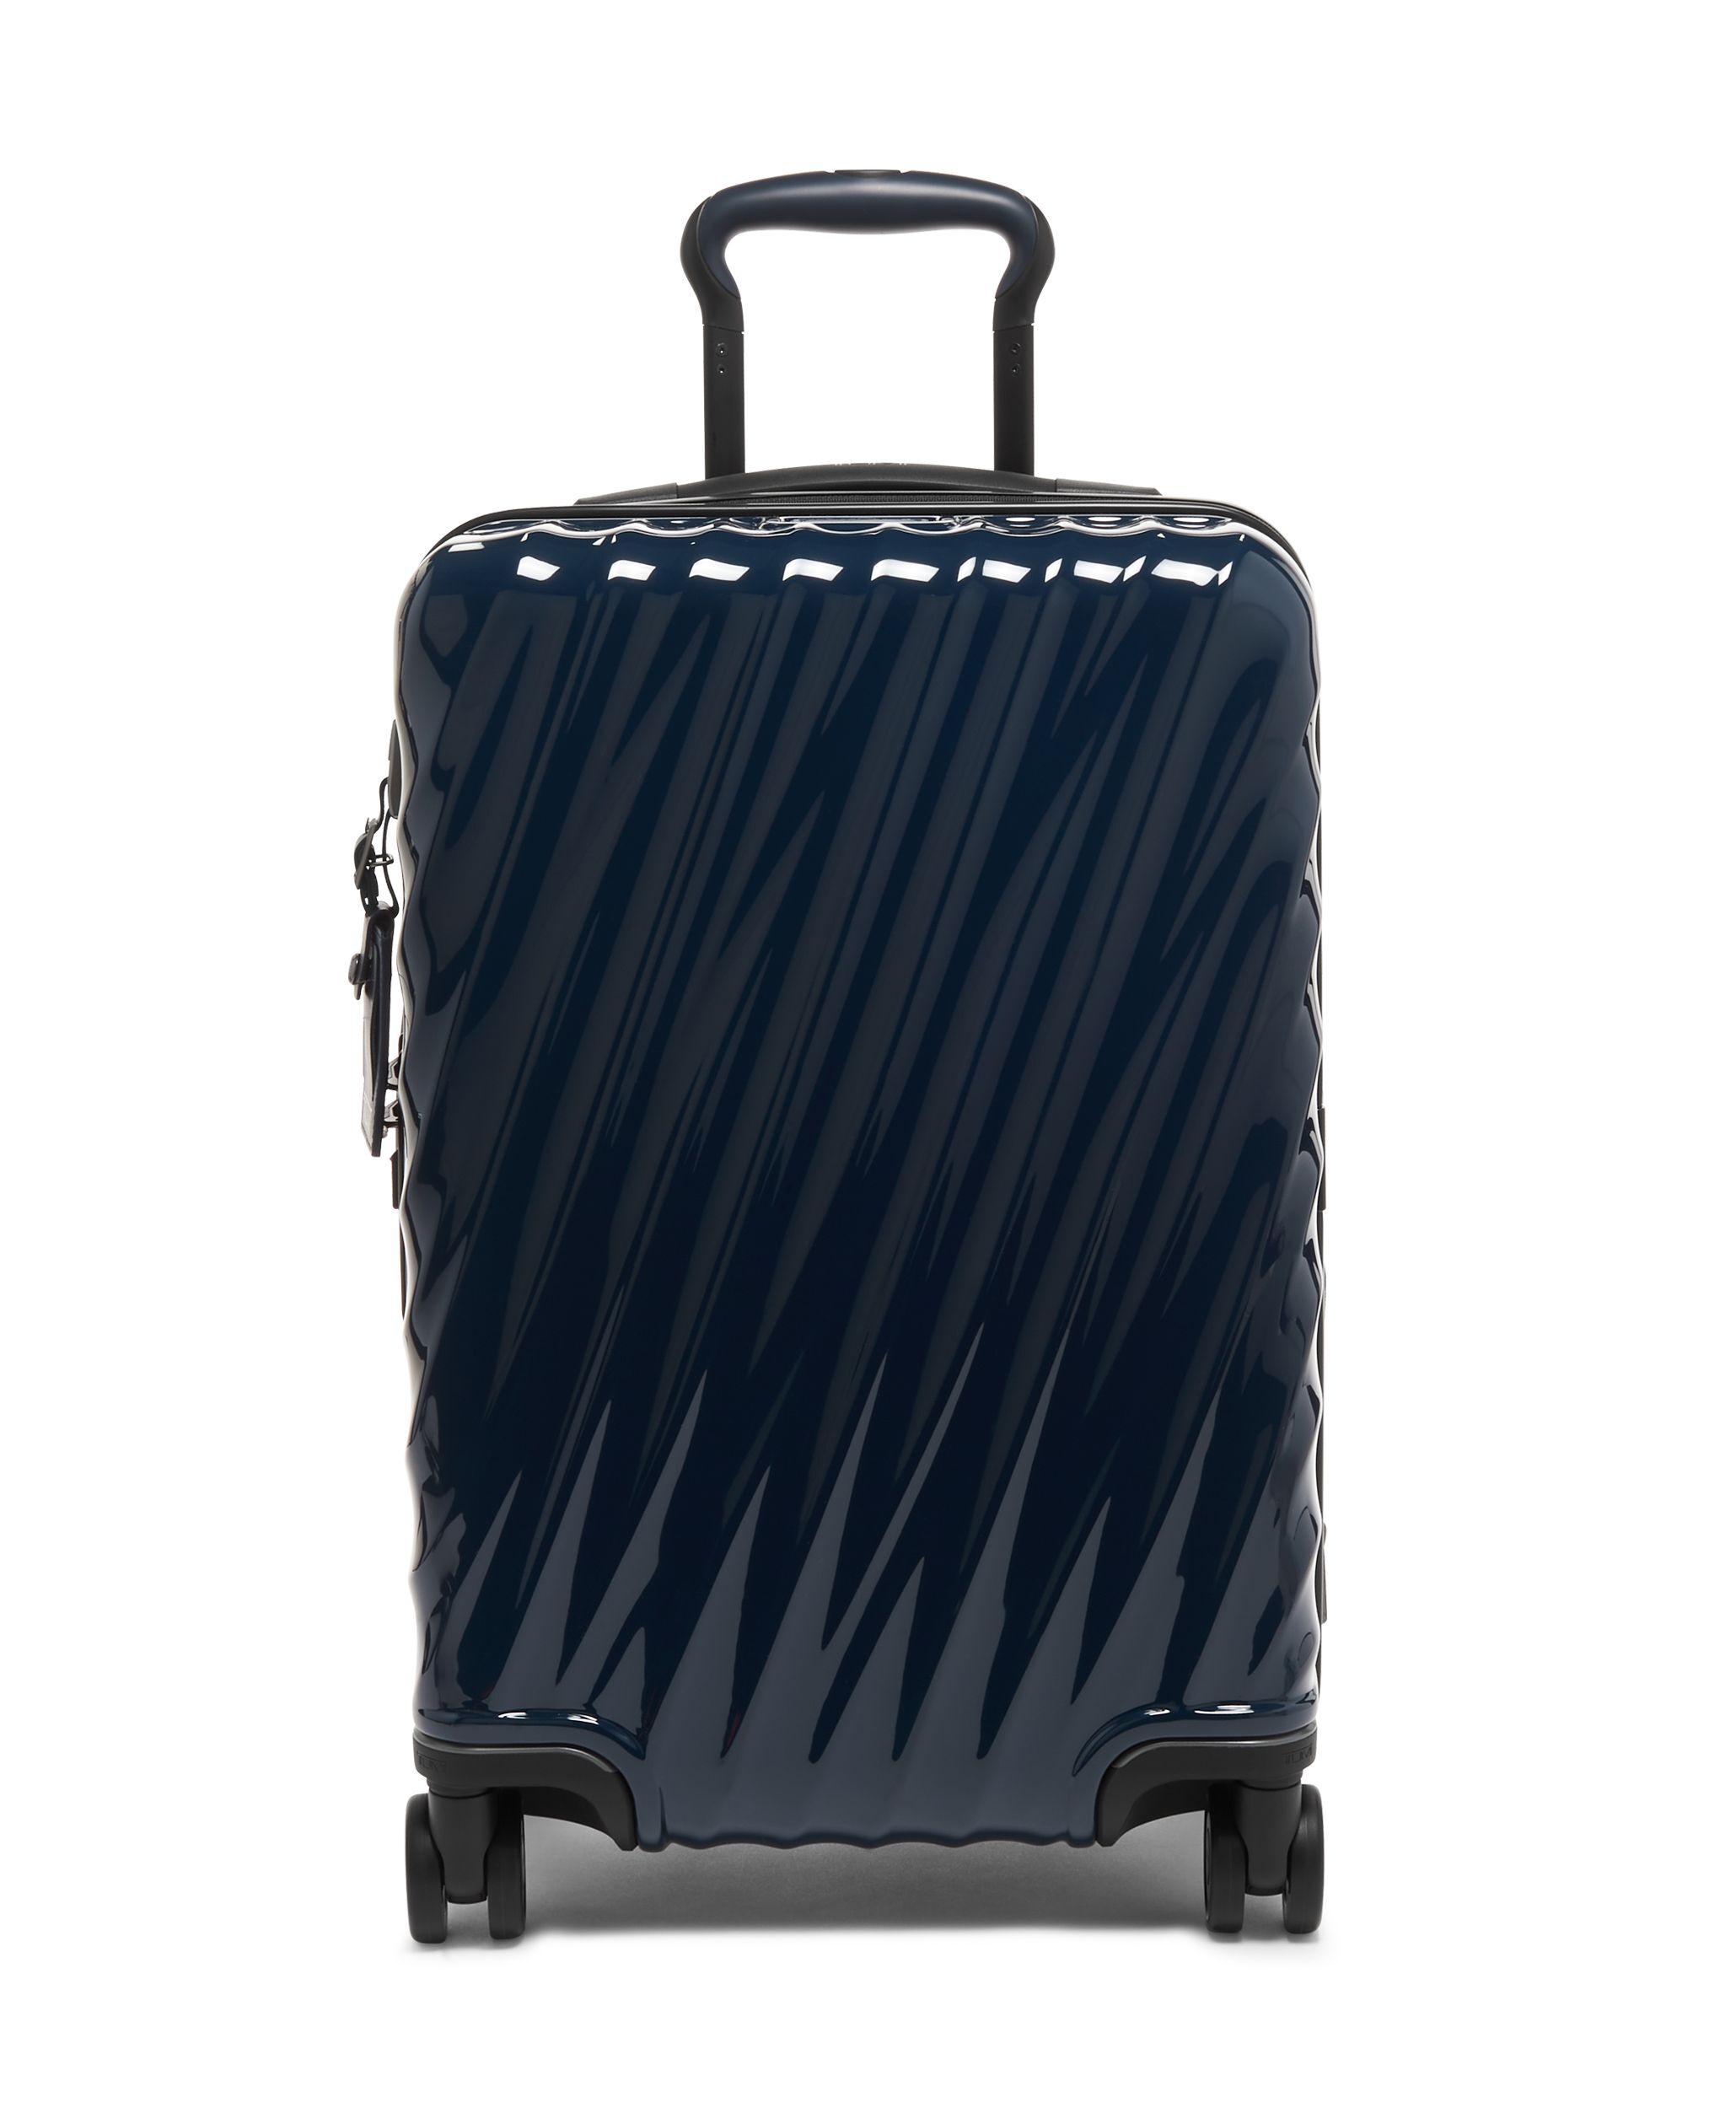 TUMIトゥミ 大型キャリーバッグ スーツケース 『22024DH』 - トラベル 